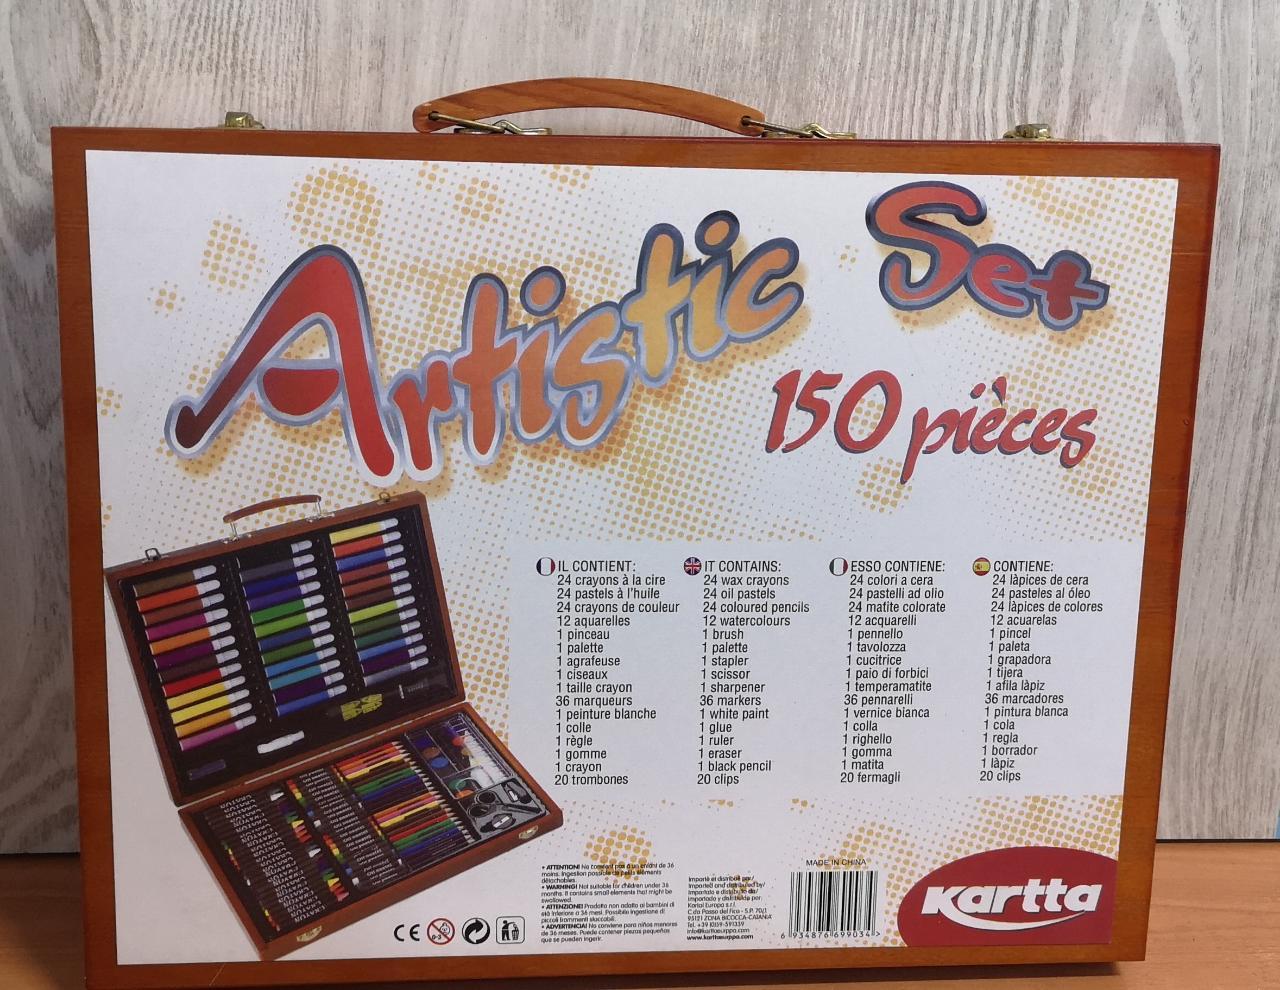 Набор для рисования Artistic Set 150 pieces фломастеры мелки карандаши краски